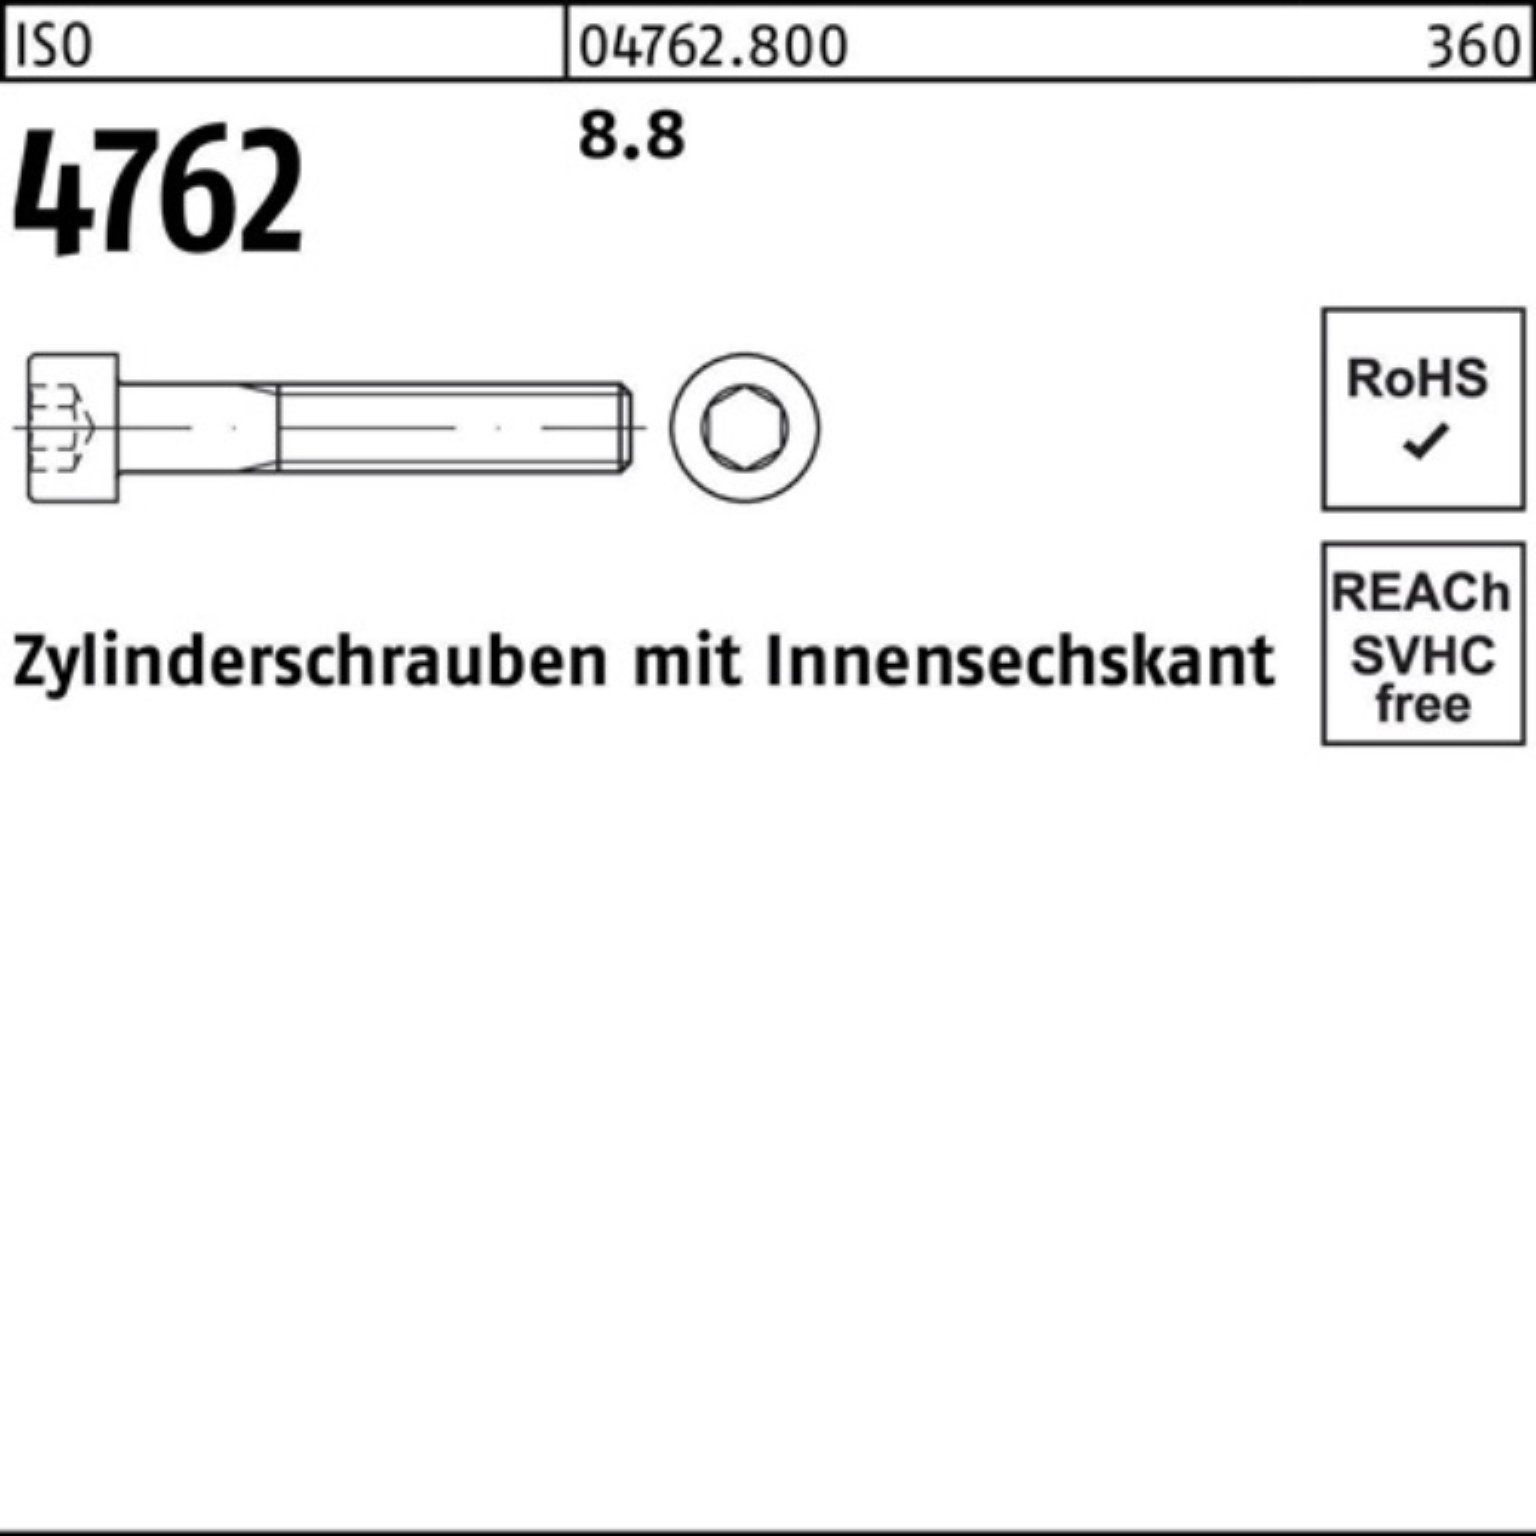 Reyher Zylinderschraube 100er Stück Innen-6kt I 1 4762 Zylinderschraube Pack 280 M48x 8.8 ISO